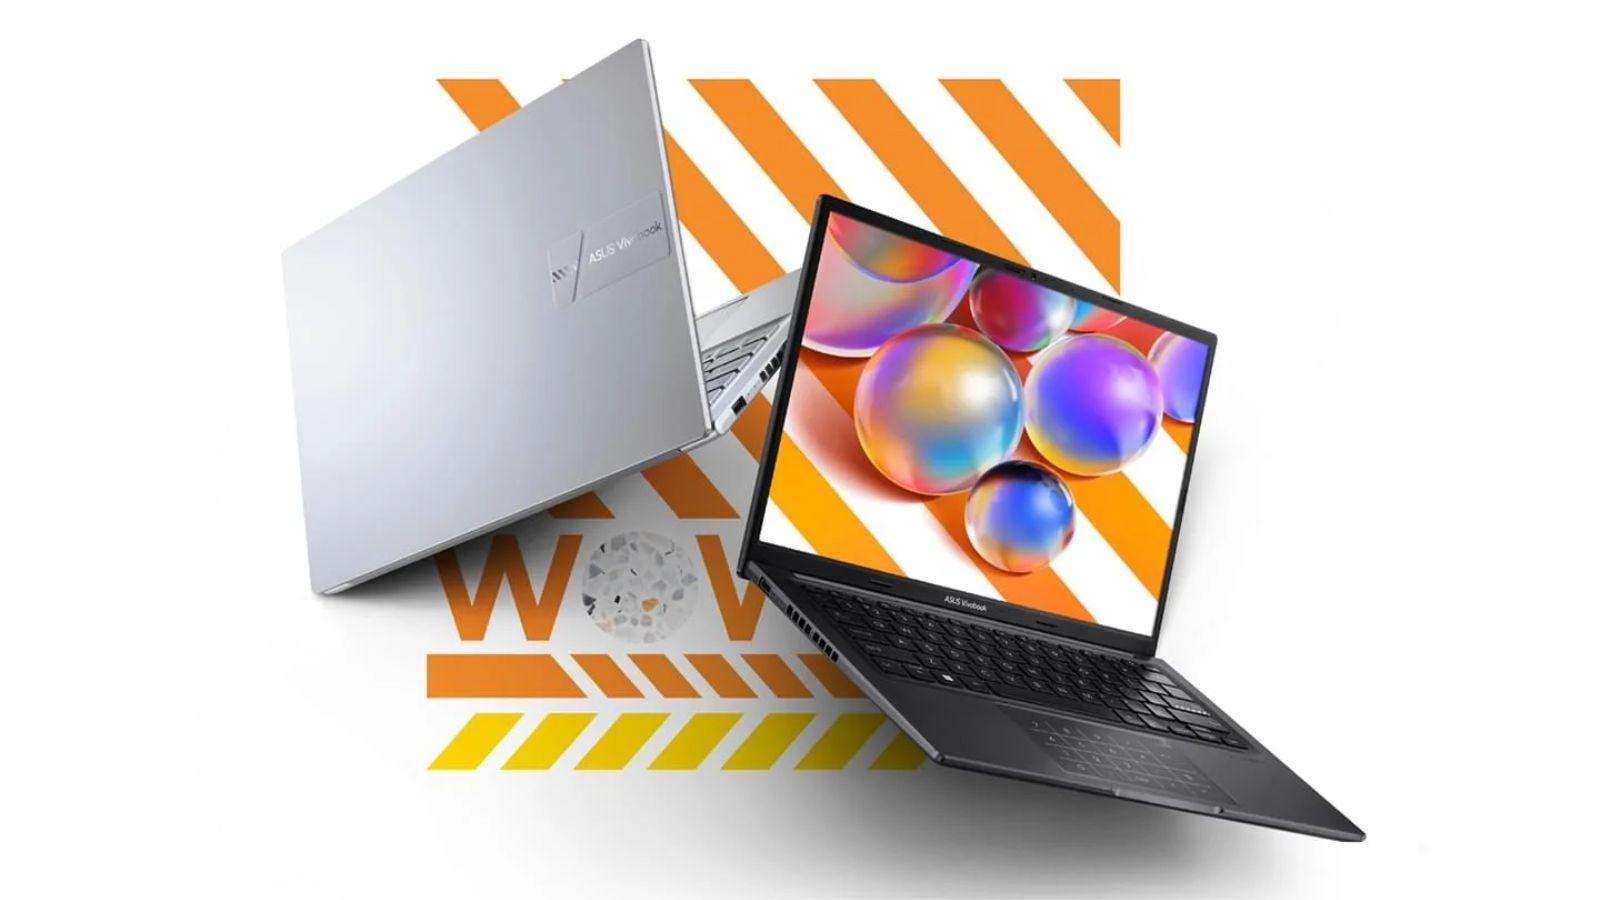 Với dòng Laptop Vivobook Classic Series được trang bị APU AMD Ryzen 7000, bạn sẽ có trải nghiệm tuyệt vời khi làm việc hoặc giải trí cả trong và ngoài nhà. Nếu bạn đang tìm kiếm một chiếc laptop mới, chắc chắn không thể bỏ qua hình ảnh này.